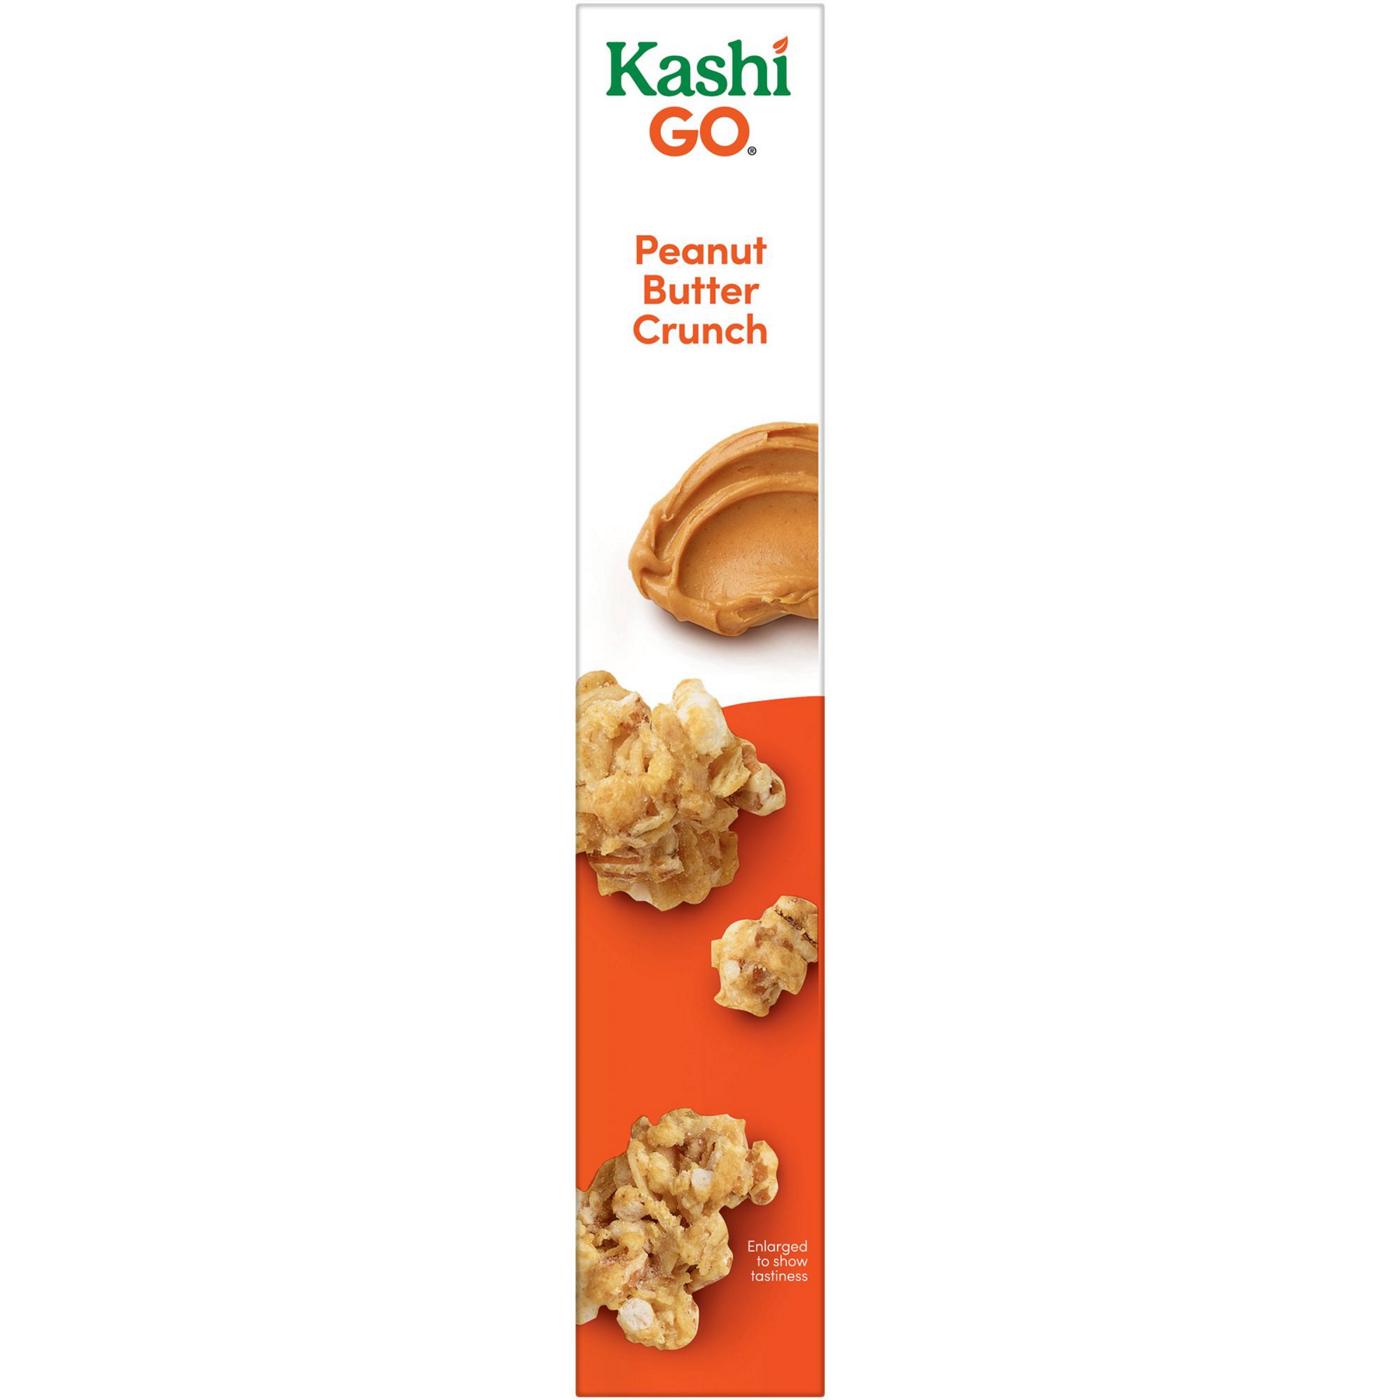 Kashi GO Peanut Butter Crunch Breakfast Cereal; image 4 of 11